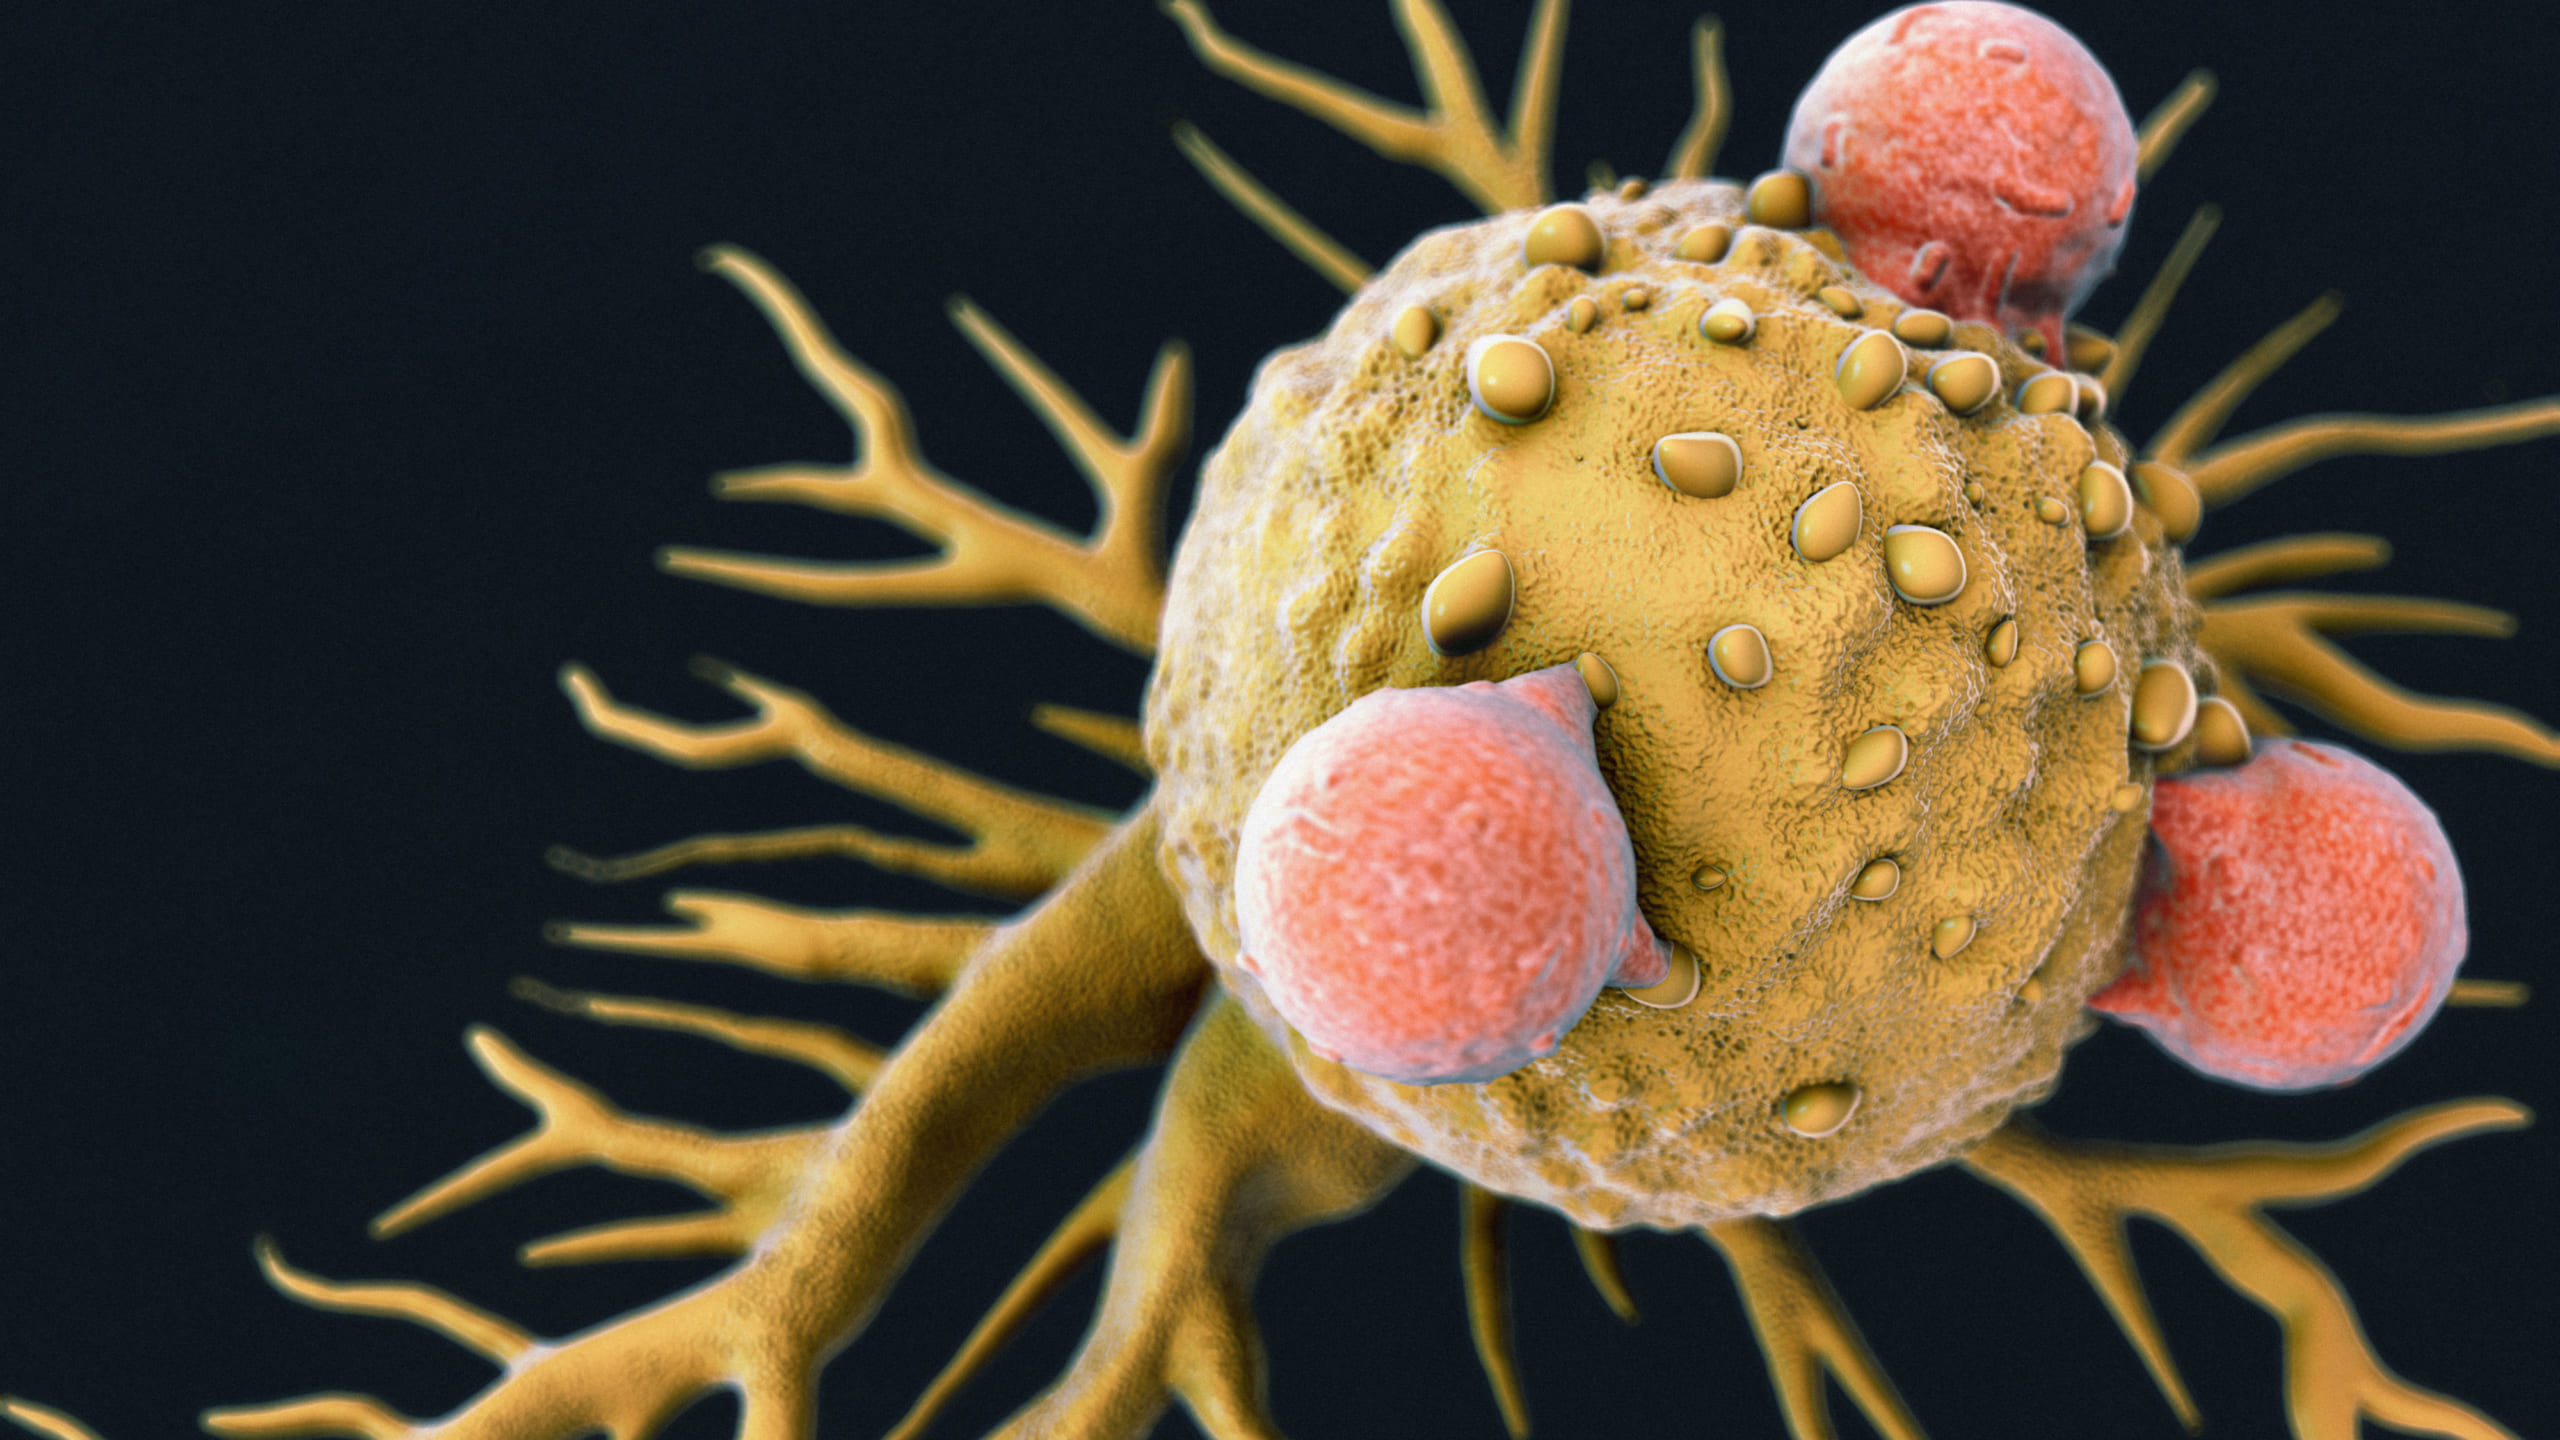 あらゆる癌細胞を攻撃できる「万能型」免疫細胞が発見されるの画像 1/4